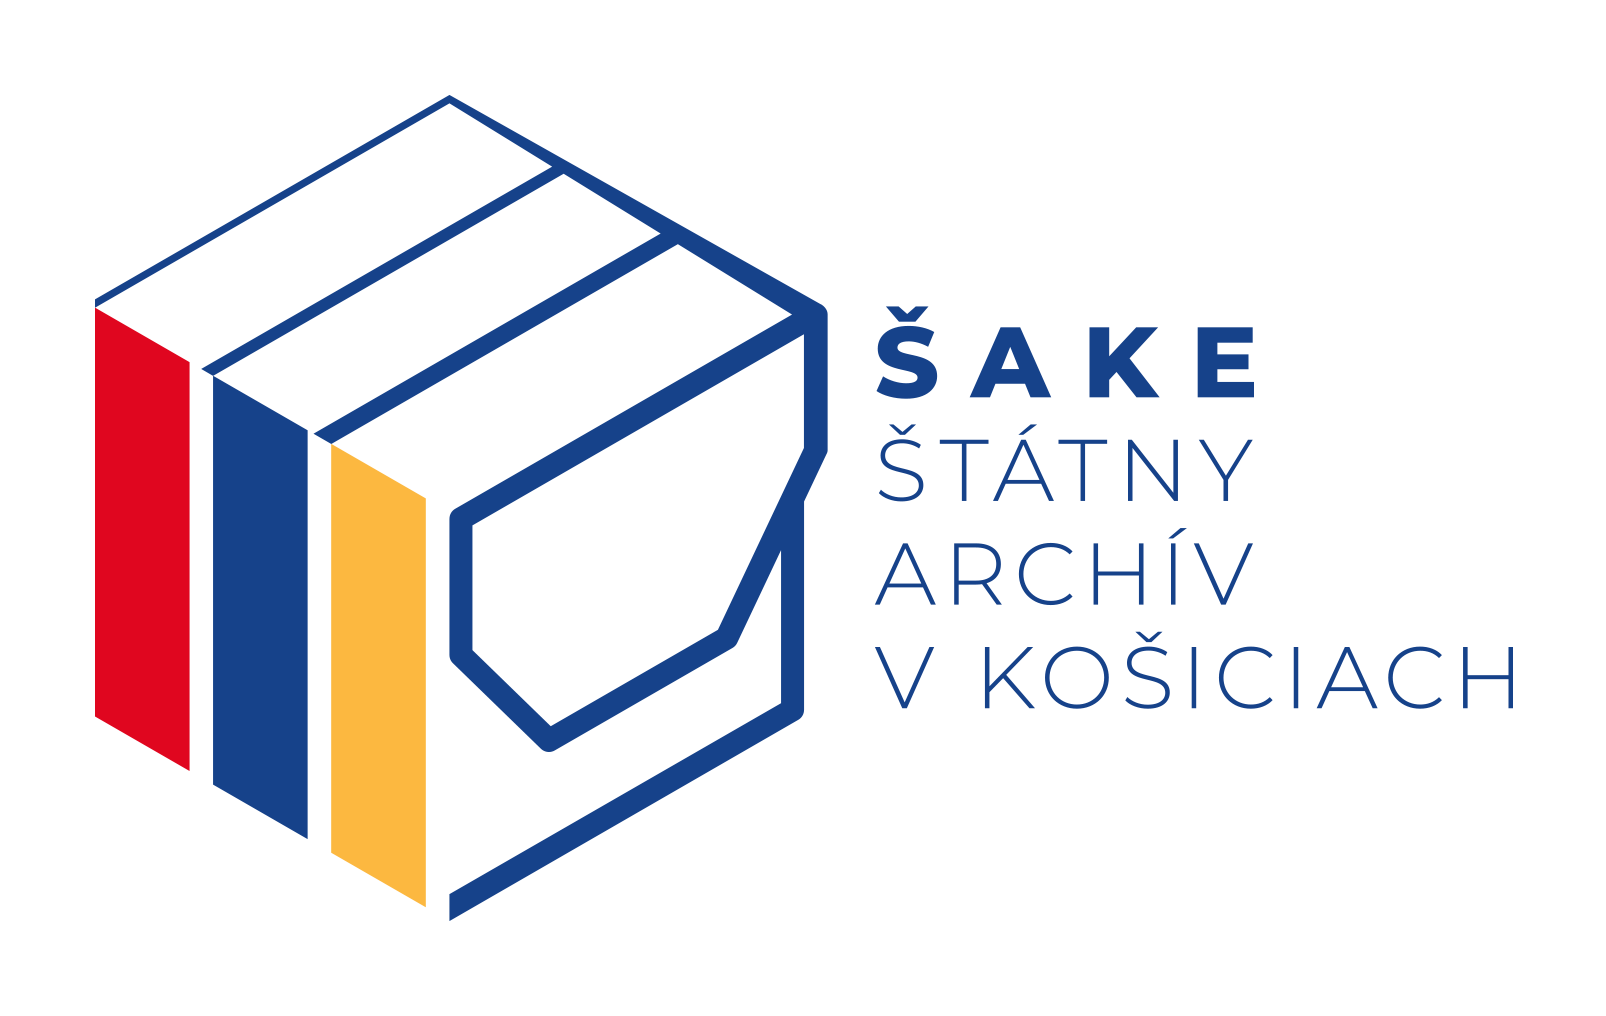 SAKE logo